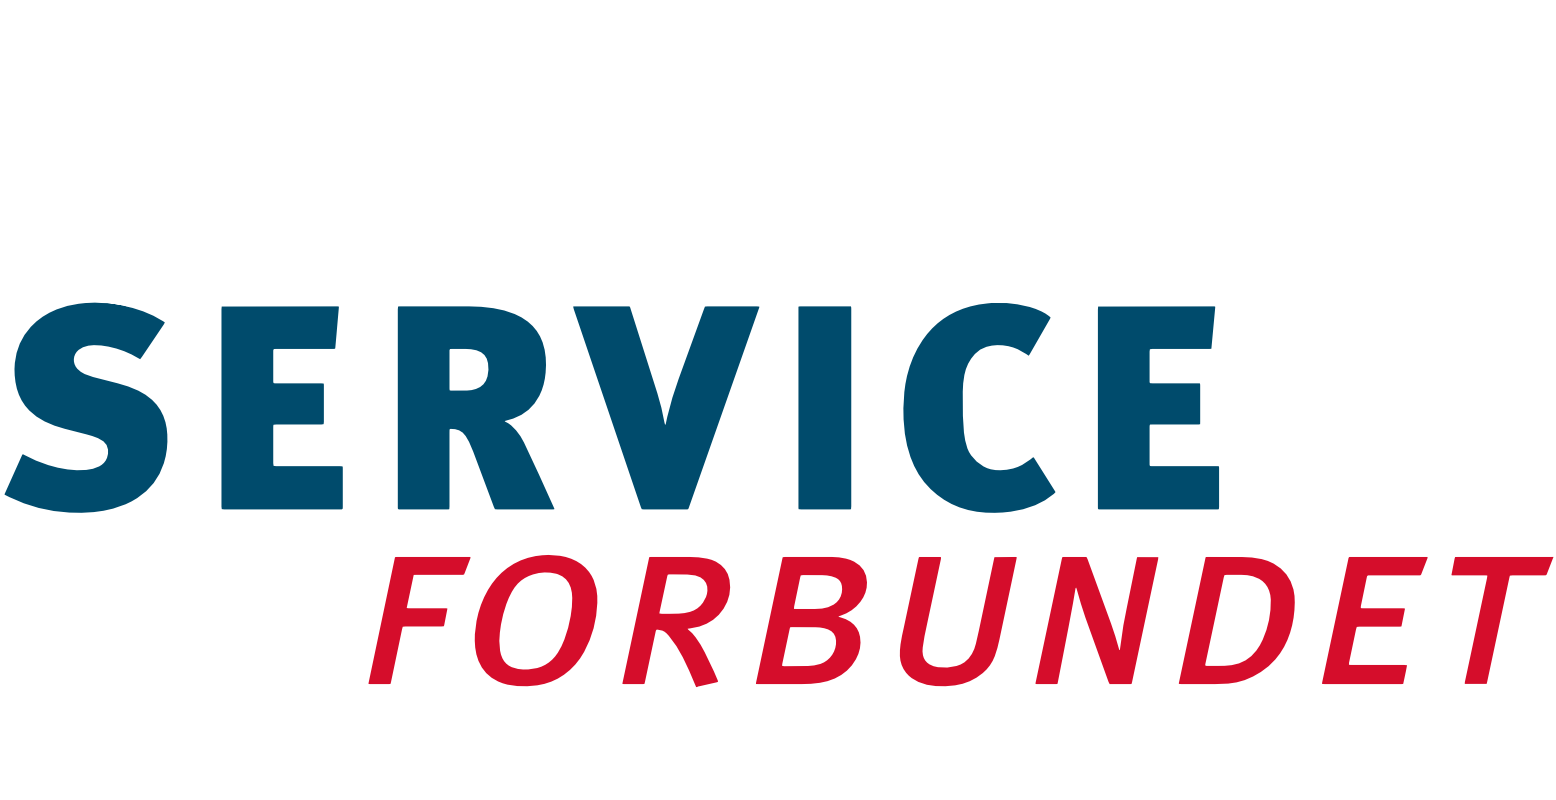 Serviceforbundet logo